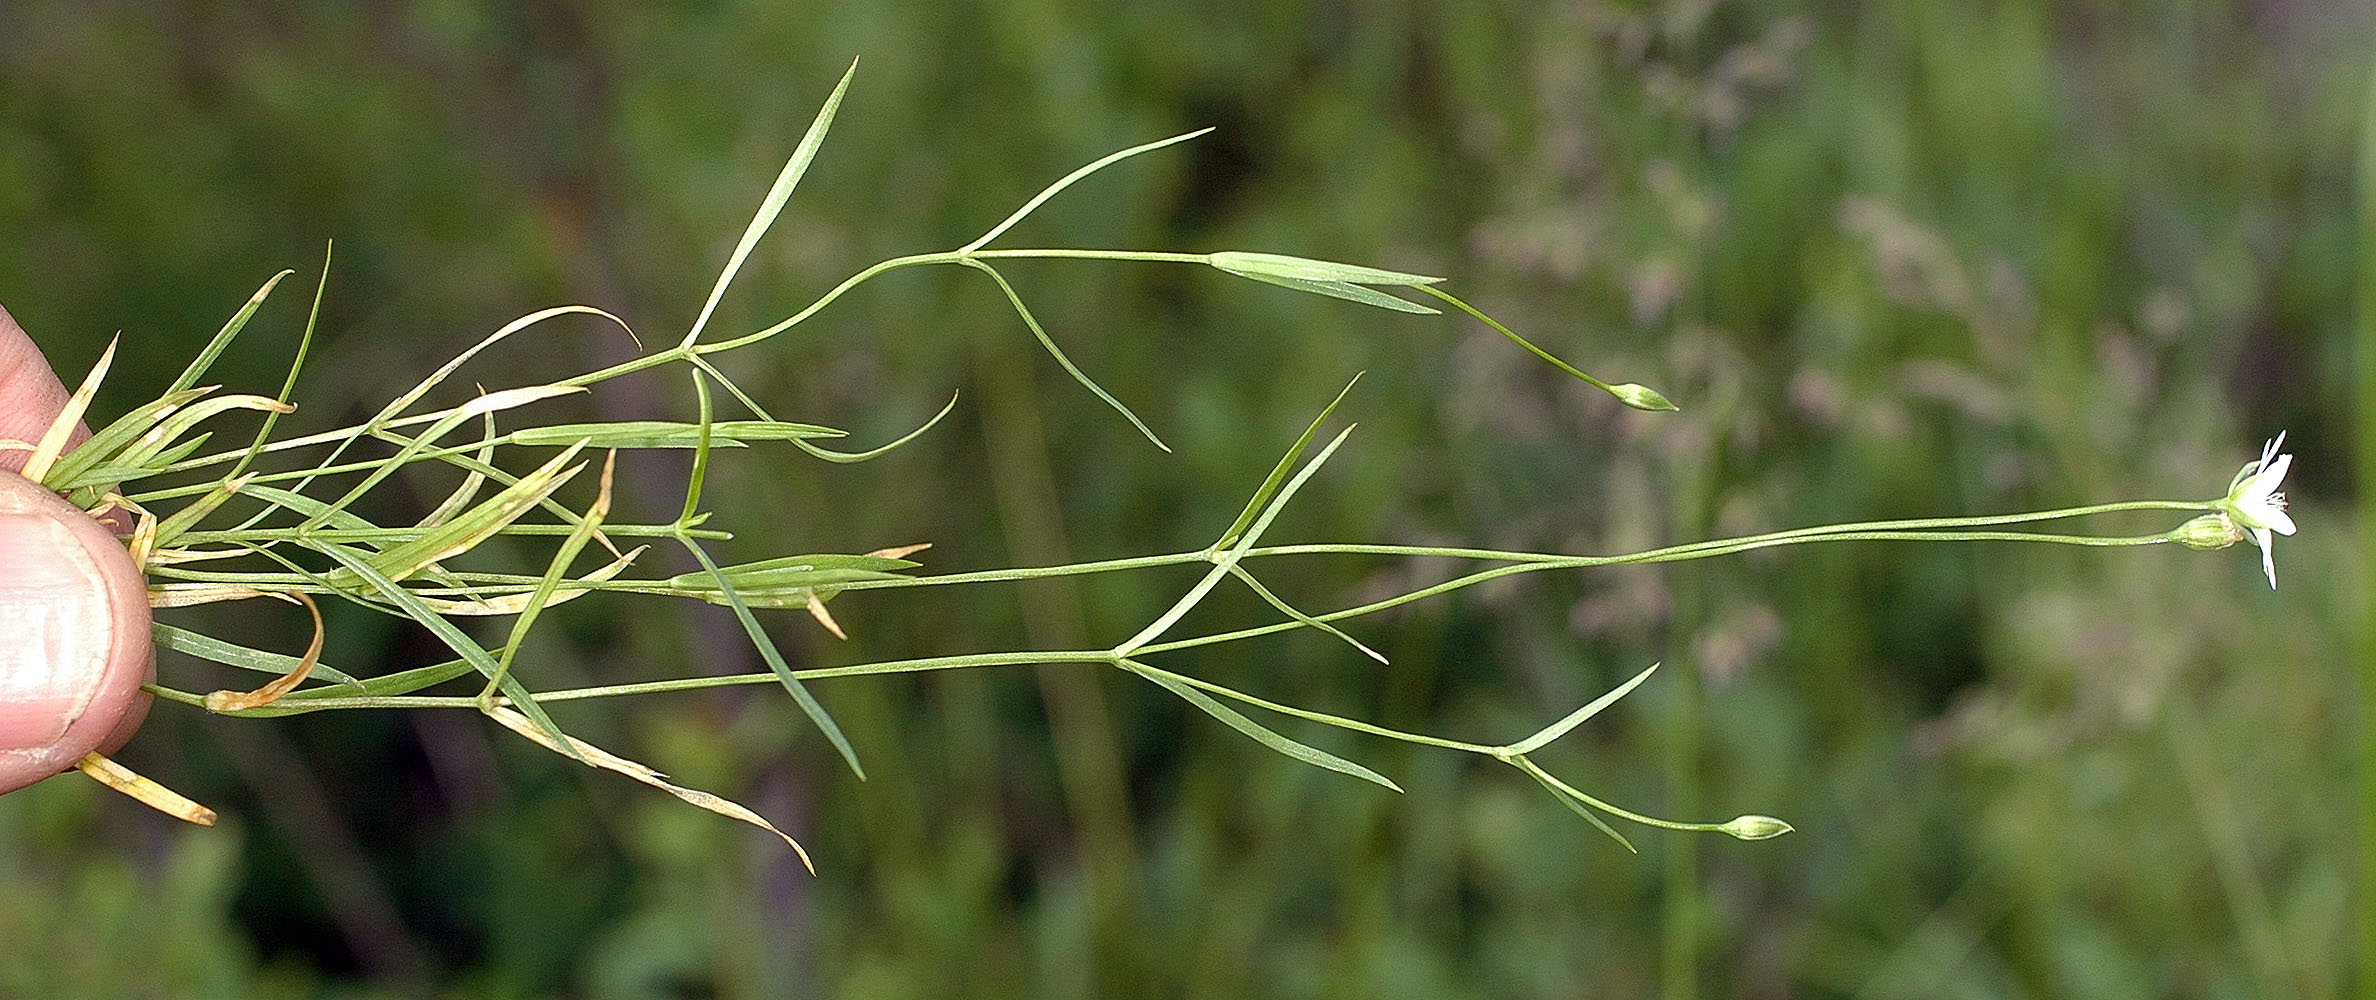 Flora of Eastern Washington Image: Stellaria longipes